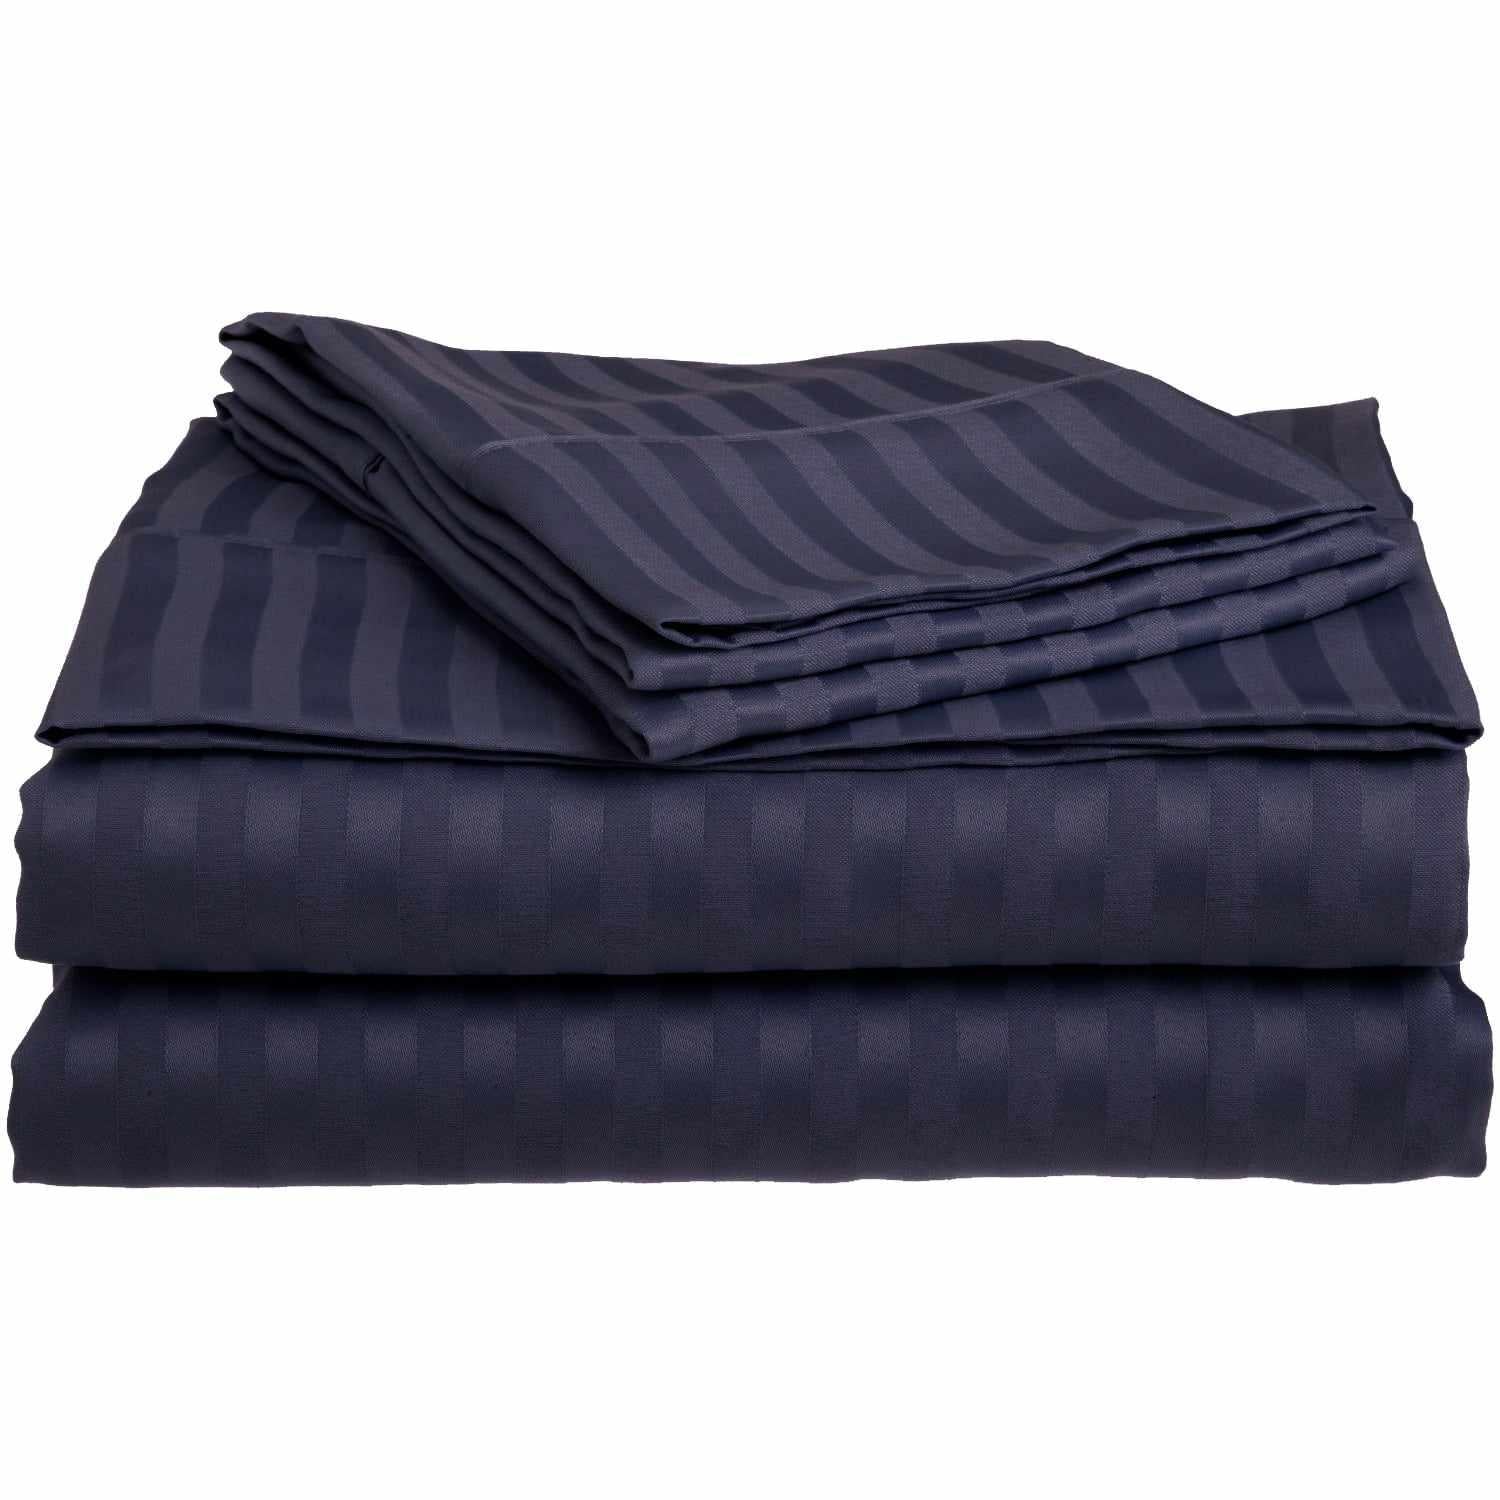 Superior Microfiber Wrinkle Resistant and Breathable Stripe Deep Pocket Bed Sheet Set - Navy Blue